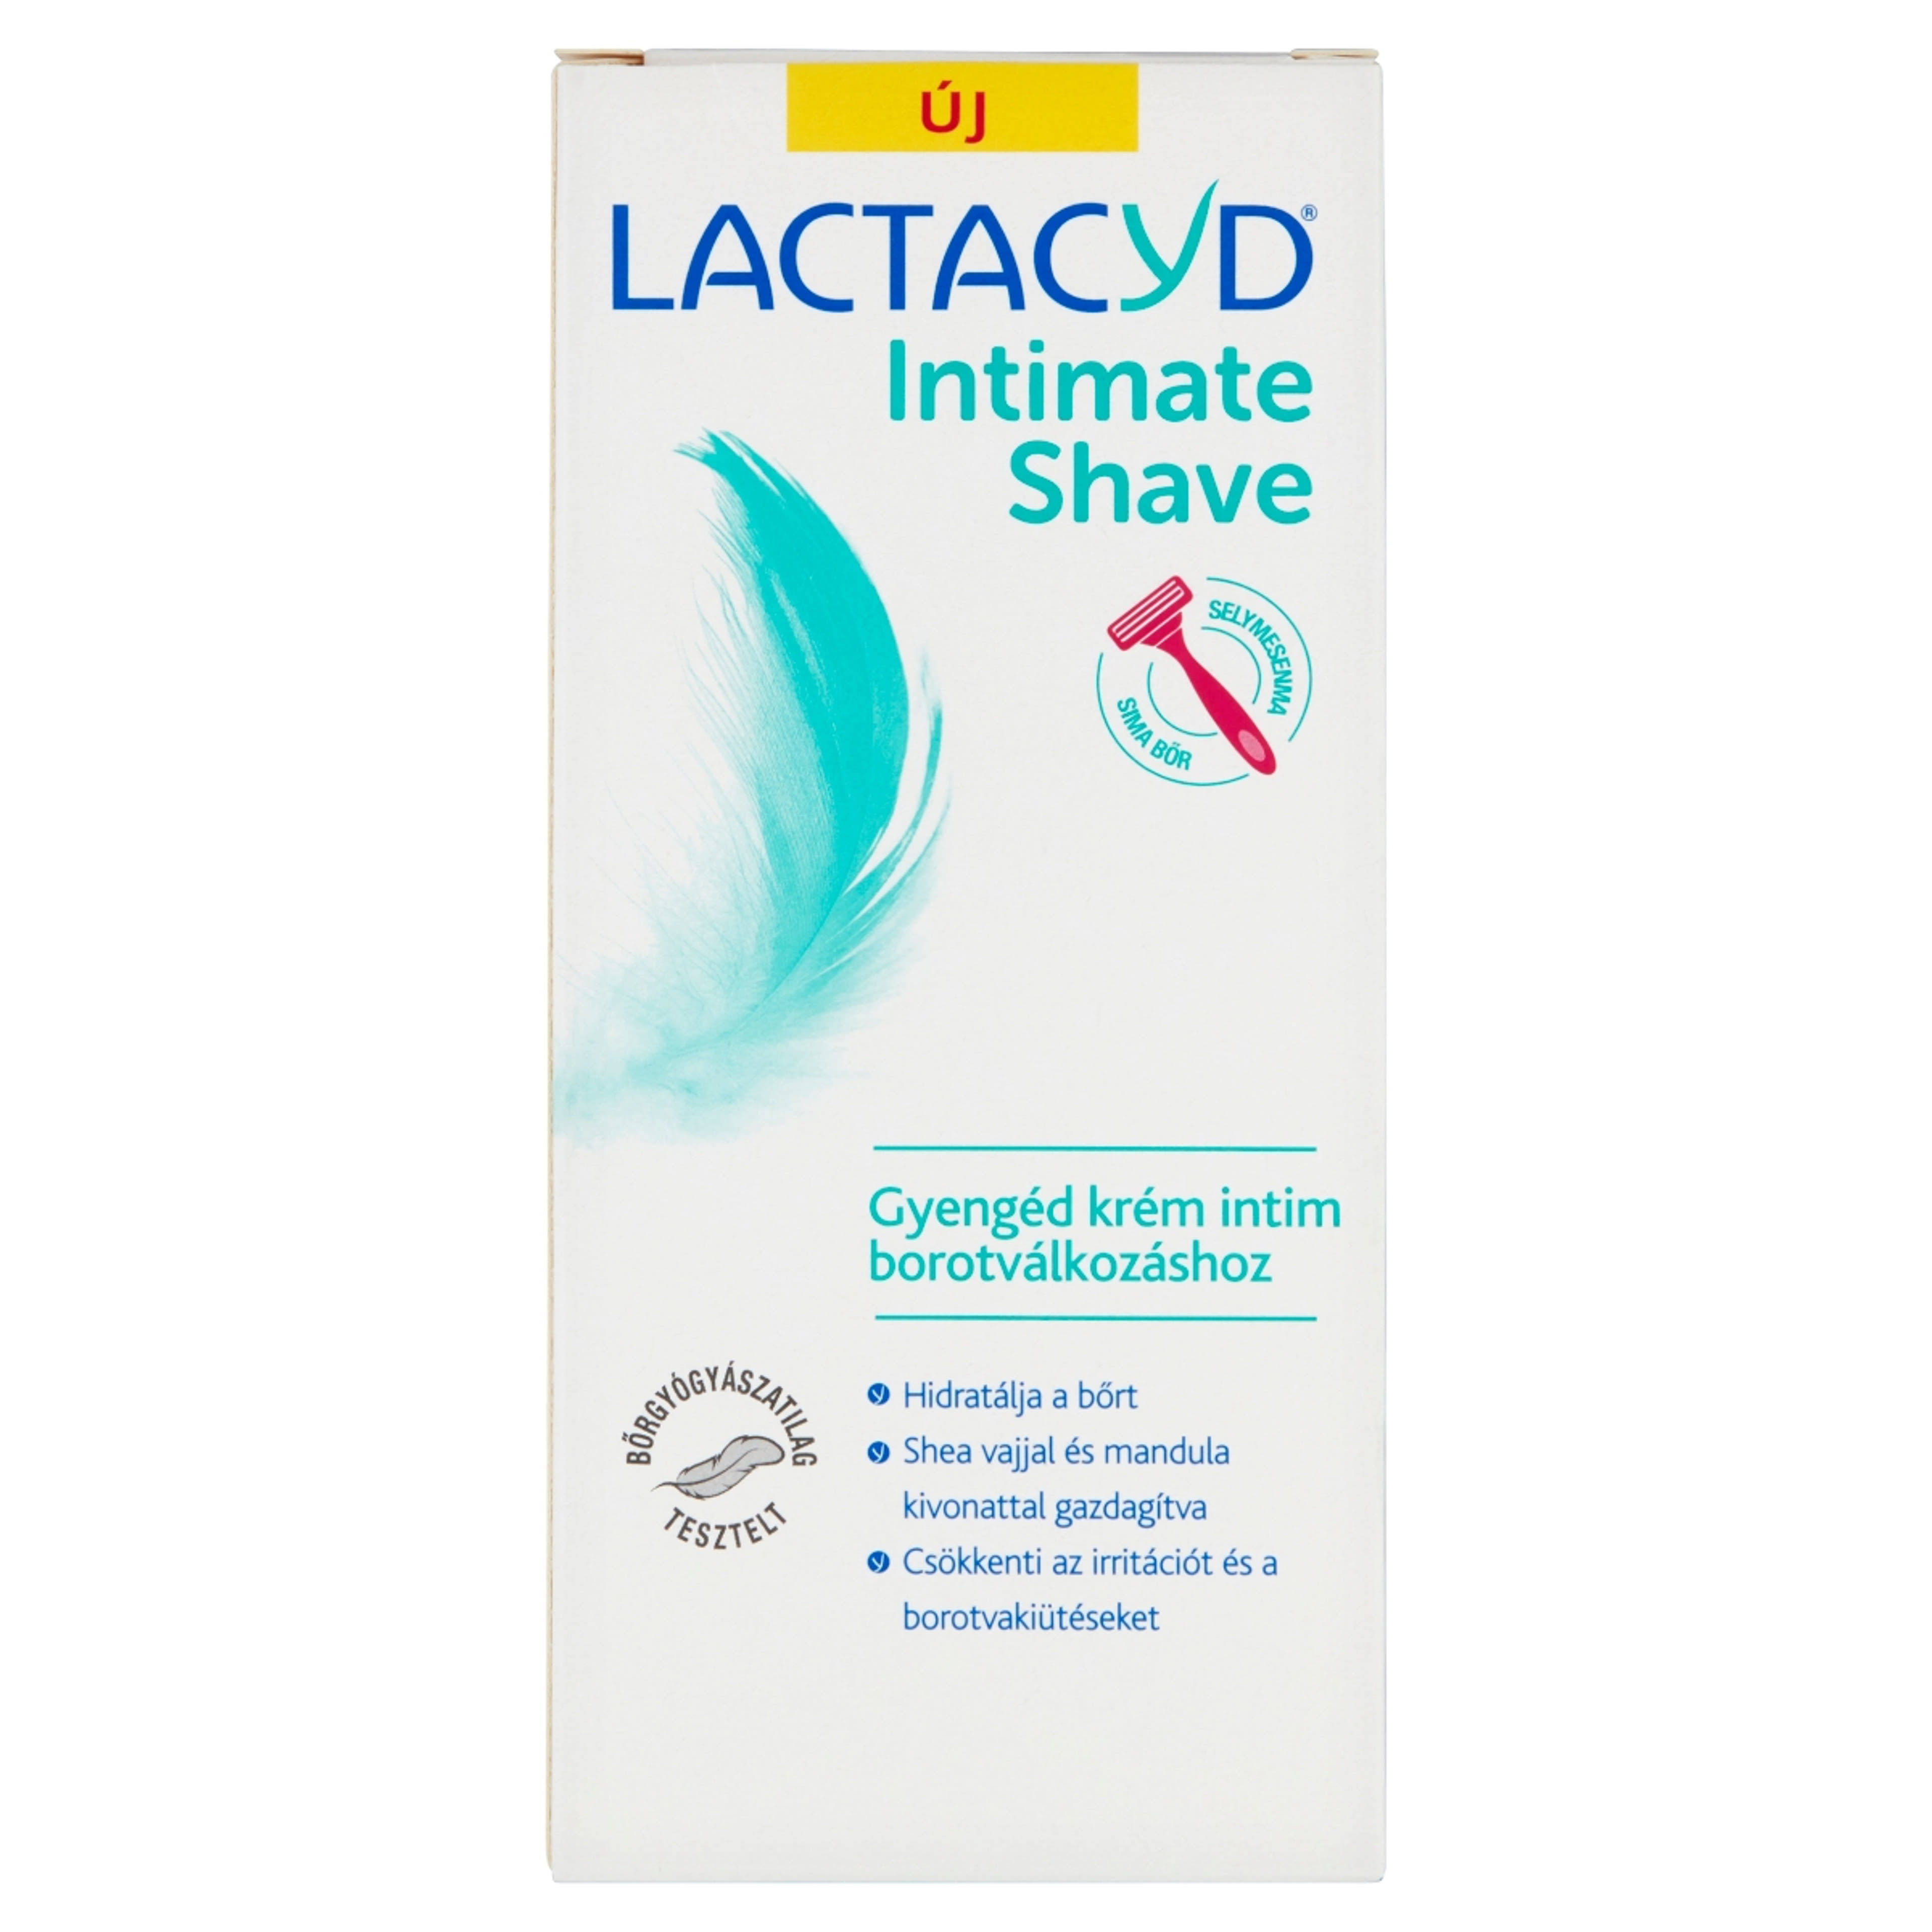 Lactacyd gyengéd krém intim borotválkozáshoz - 200 ml